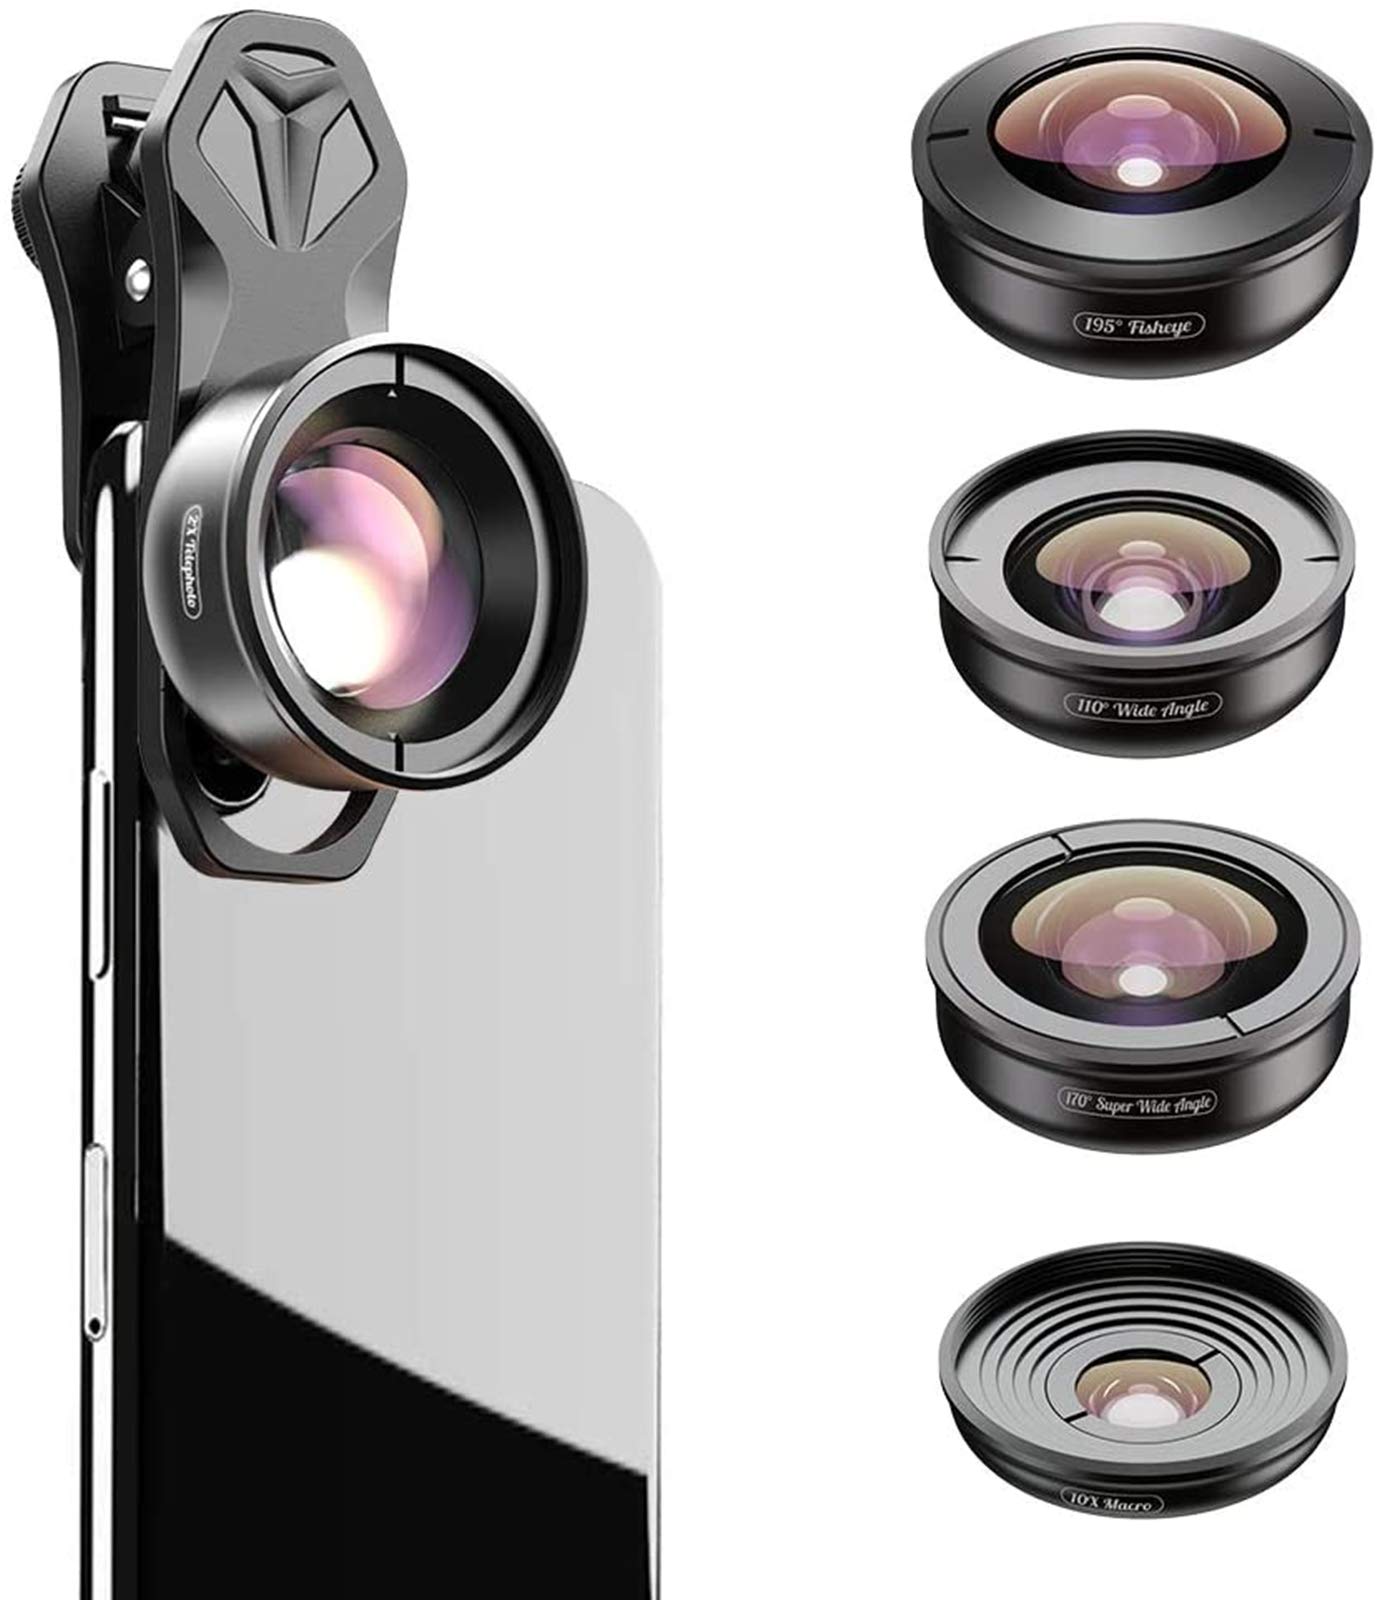 YIDOBLO 5-in-1 Handy-Kamera-Objektiv-Set: 2 x Teleobjektiv + 195 Fischaugen + 110 Weitwinkel + 10 x Marco + 170 Super-Weitwinkel für iPhone, Samsung usw